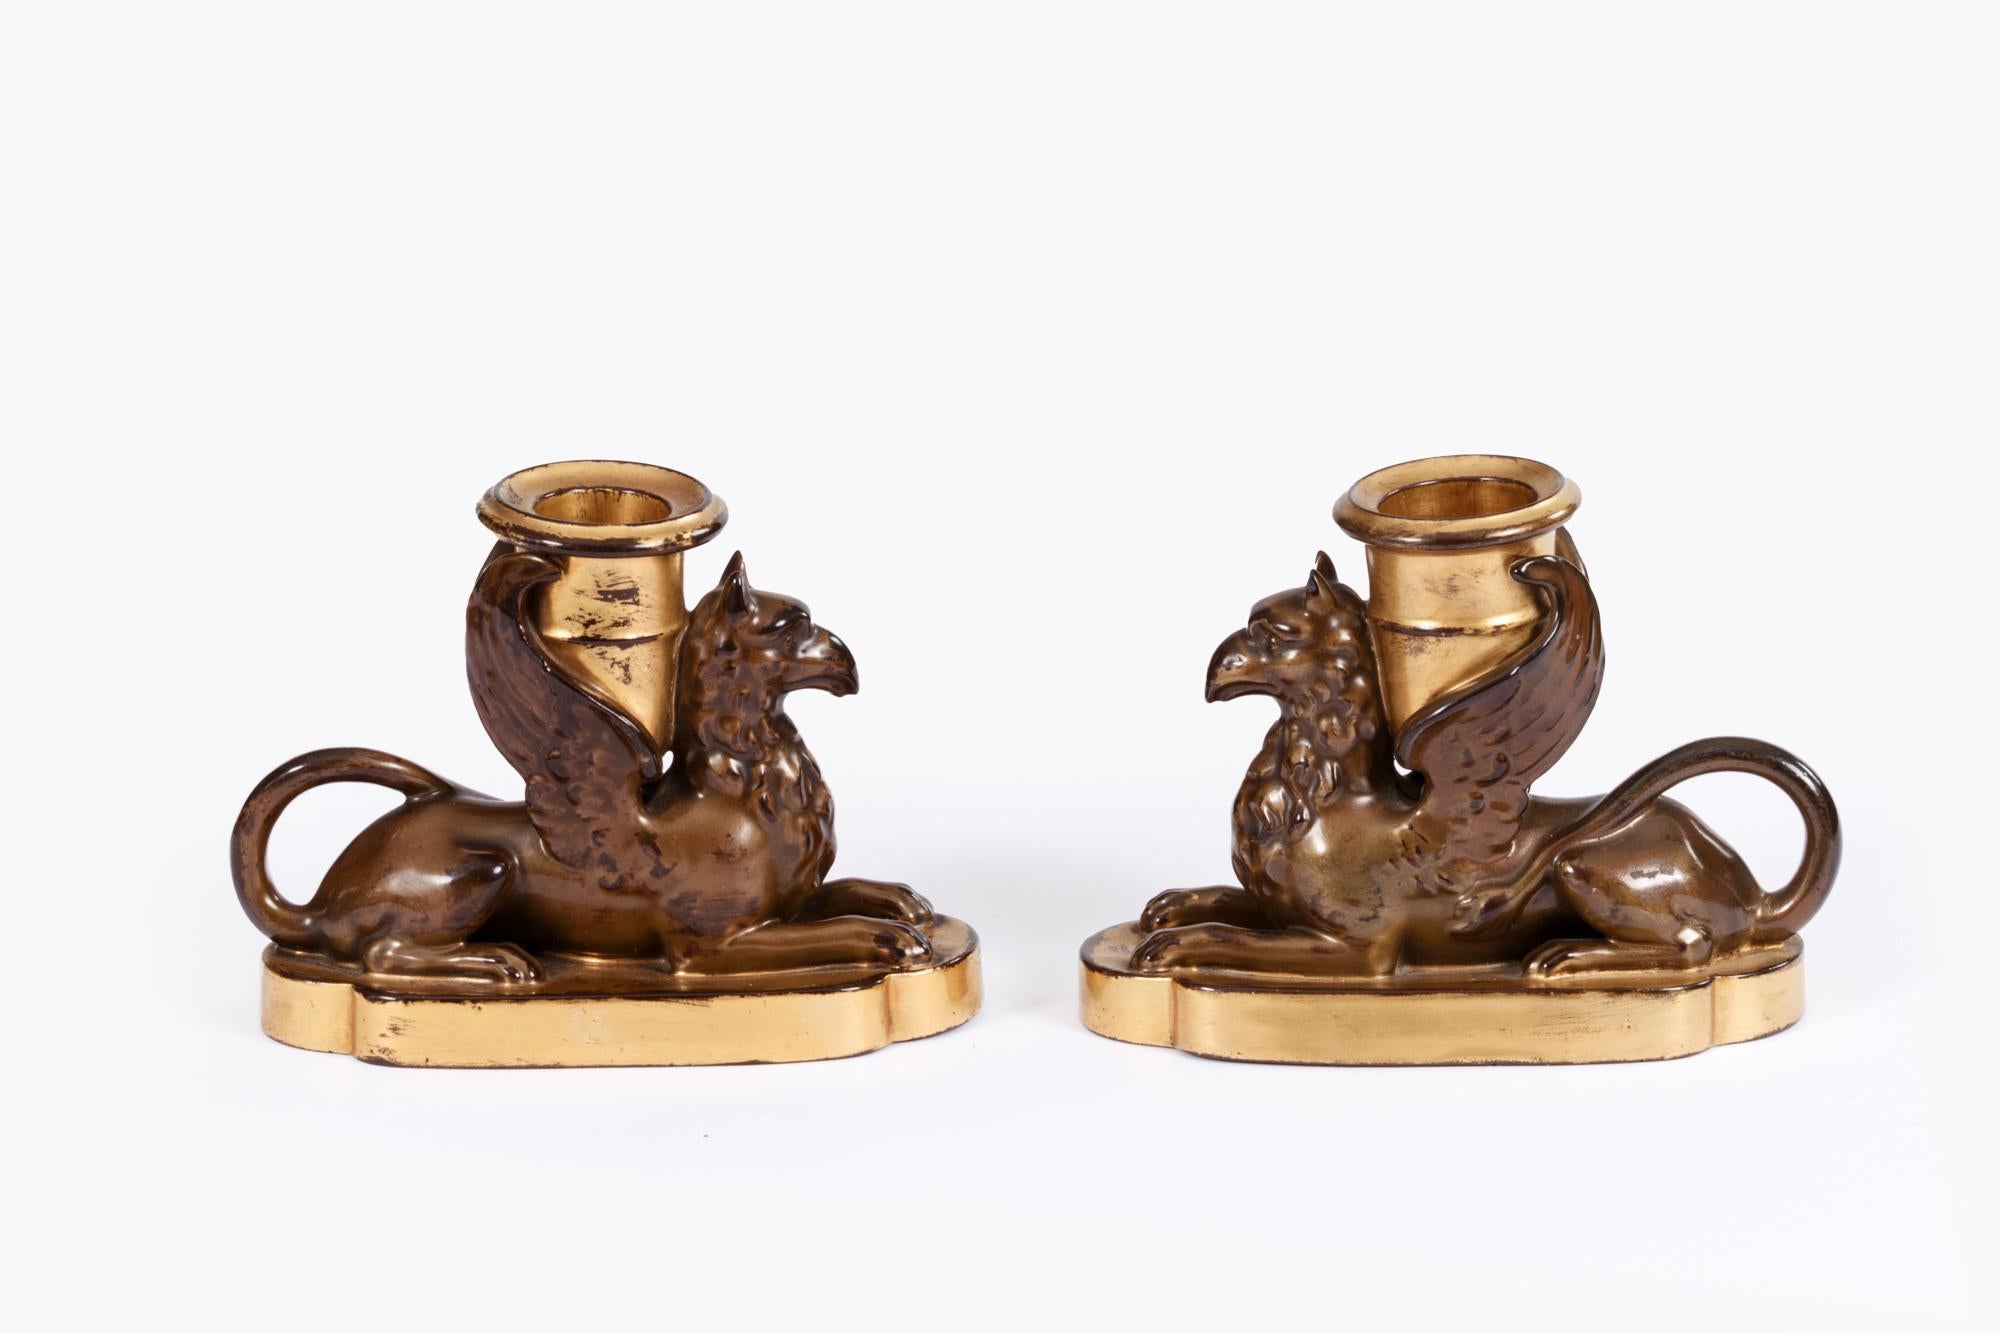 Paire de griffons en porcelaine anglaise Worcester du début du 19e siècle, décorés d'un effet de bronze simulé, sur une base plate en forme décorée de dorures, une applique à bougie et dorée sur le dos, entre les ailes. Les griffons symbolisent le